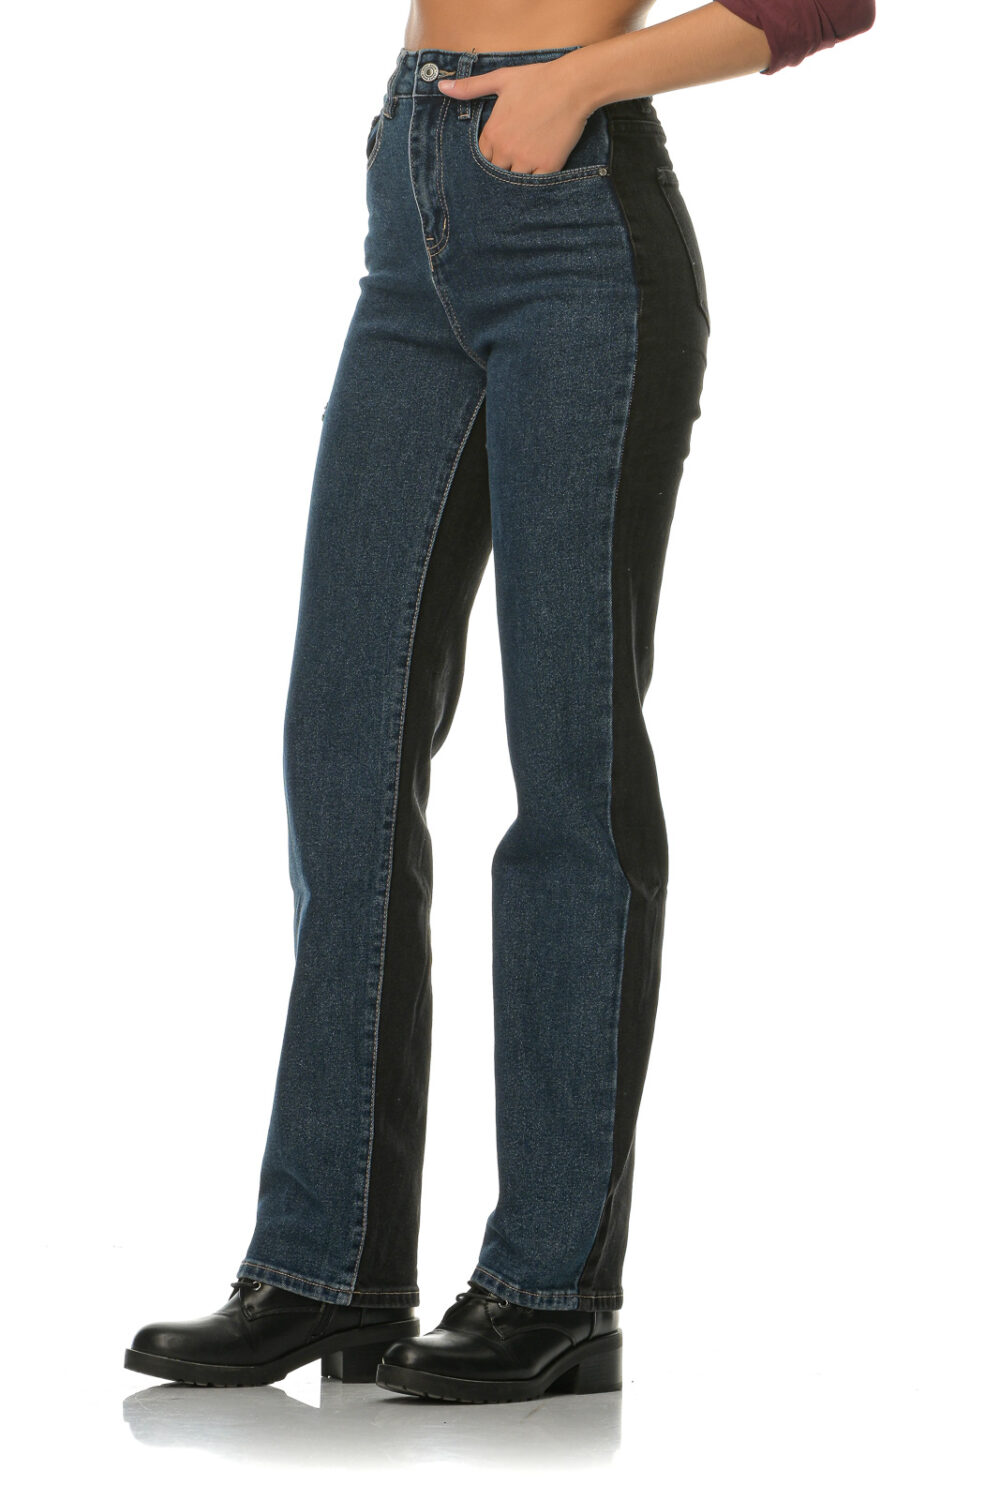 Διπλό ψηλόμεσο ελαστικό τζιν παντελόνι(μπροστά μπλε χρώμα και πίσω μαύρο)